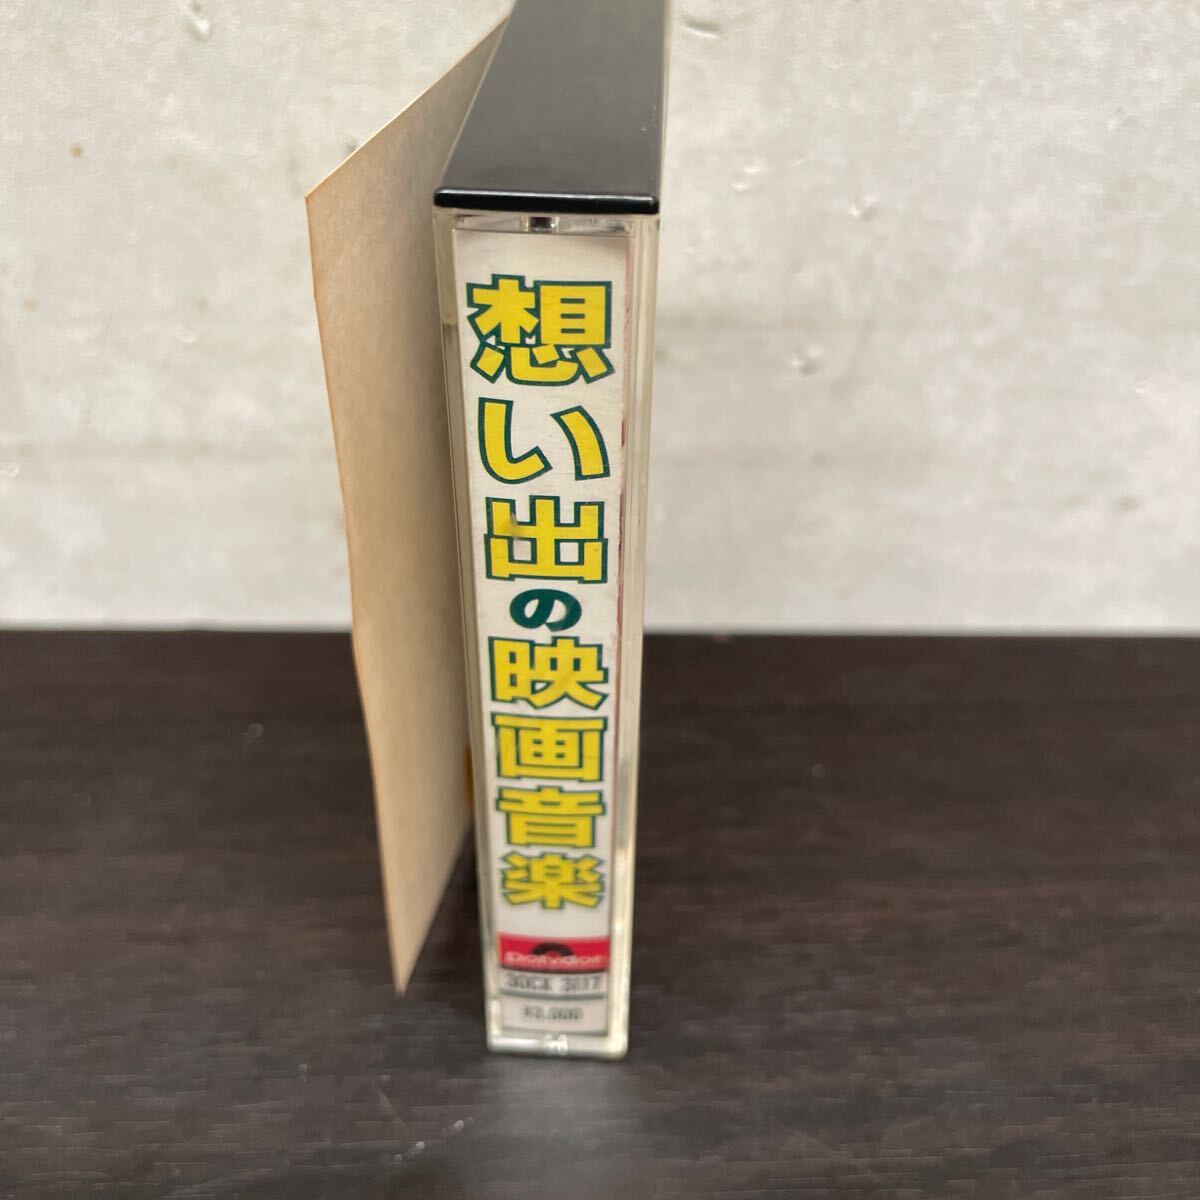 昭和レトロ 中古カセットテープ 思い出の映画音楽の画像2